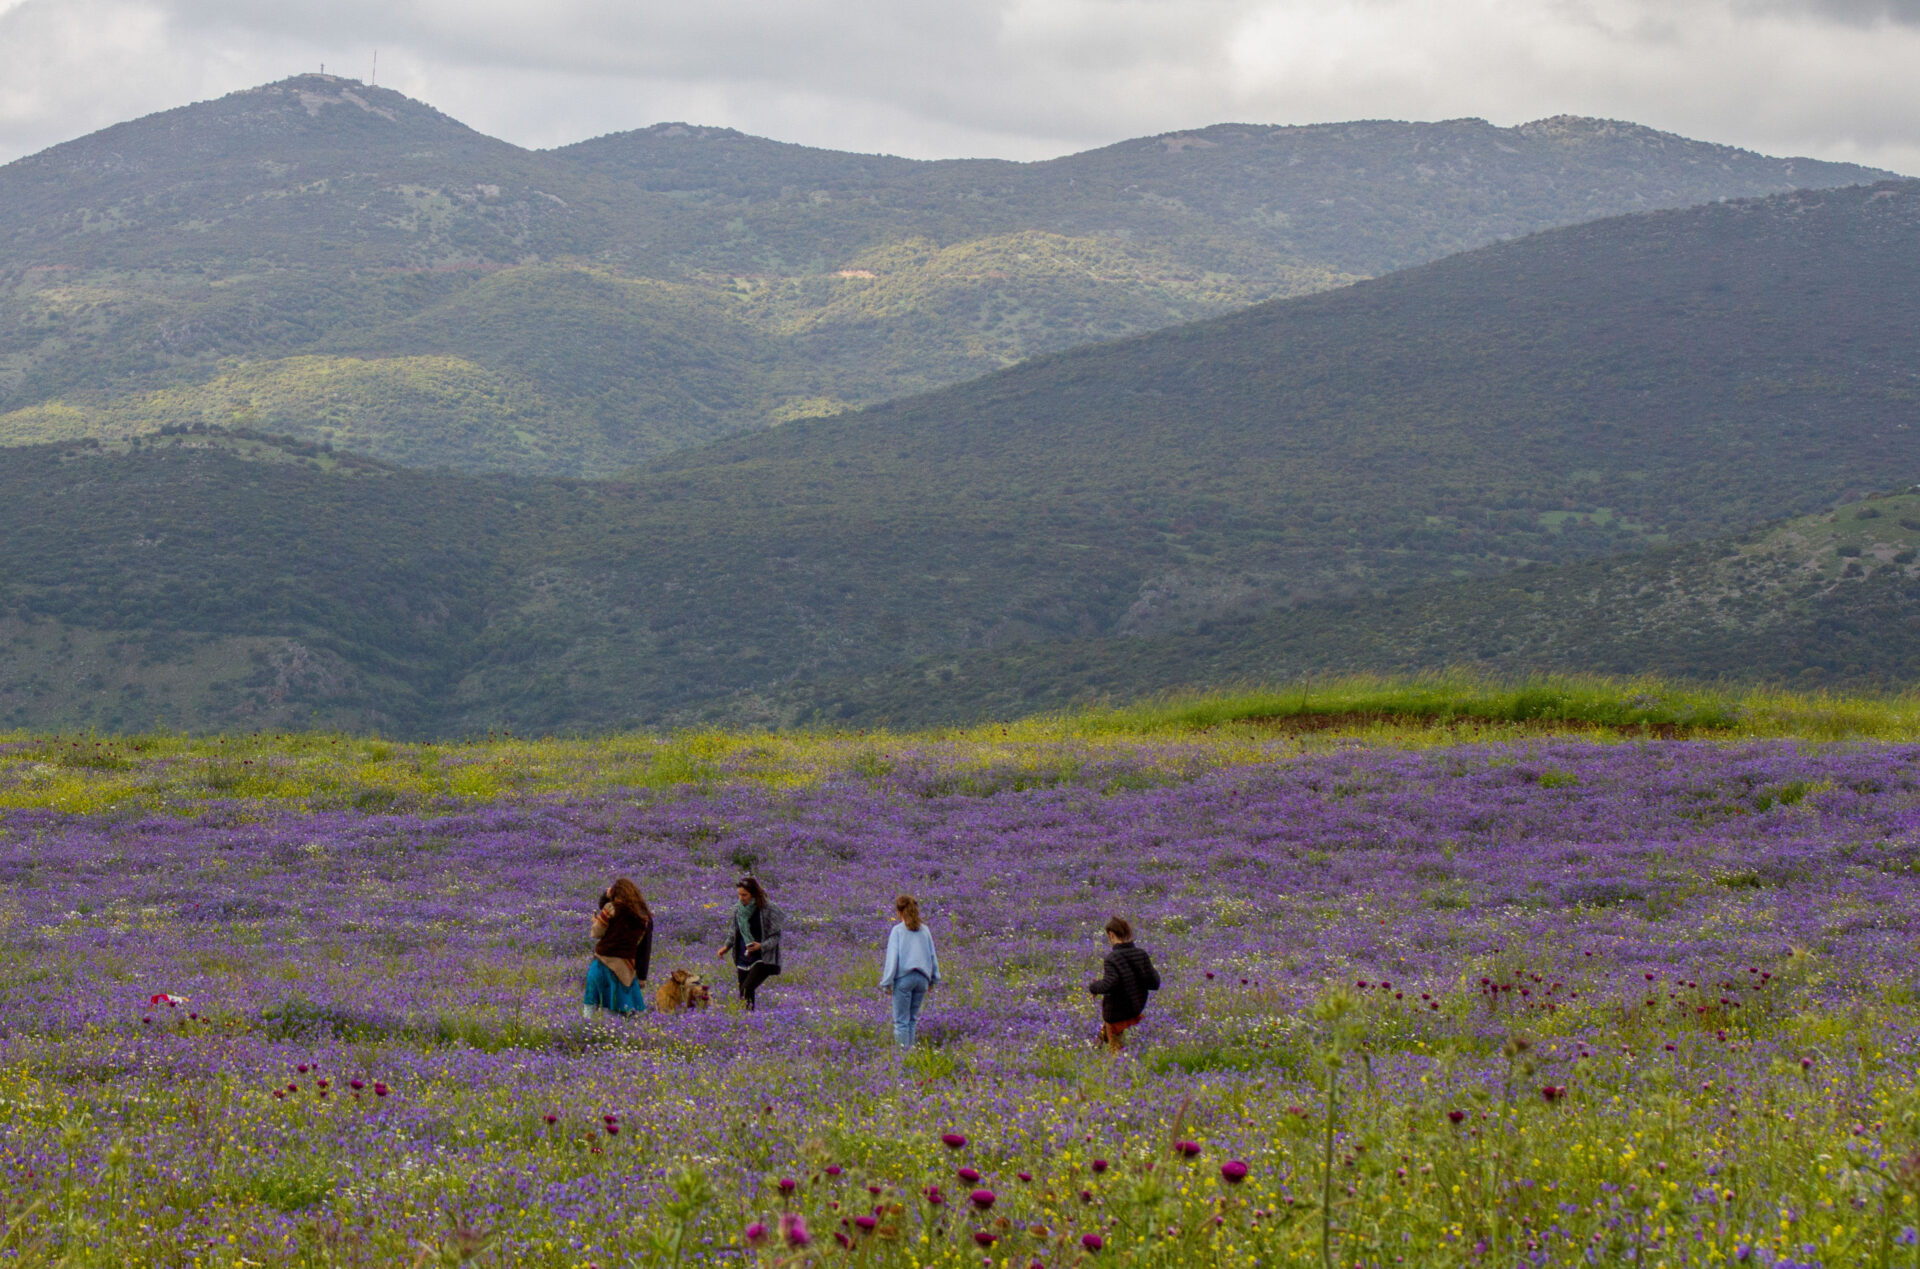 10 lugares para ver las hermosas flores silvestres de Israel - ISRAEL21c